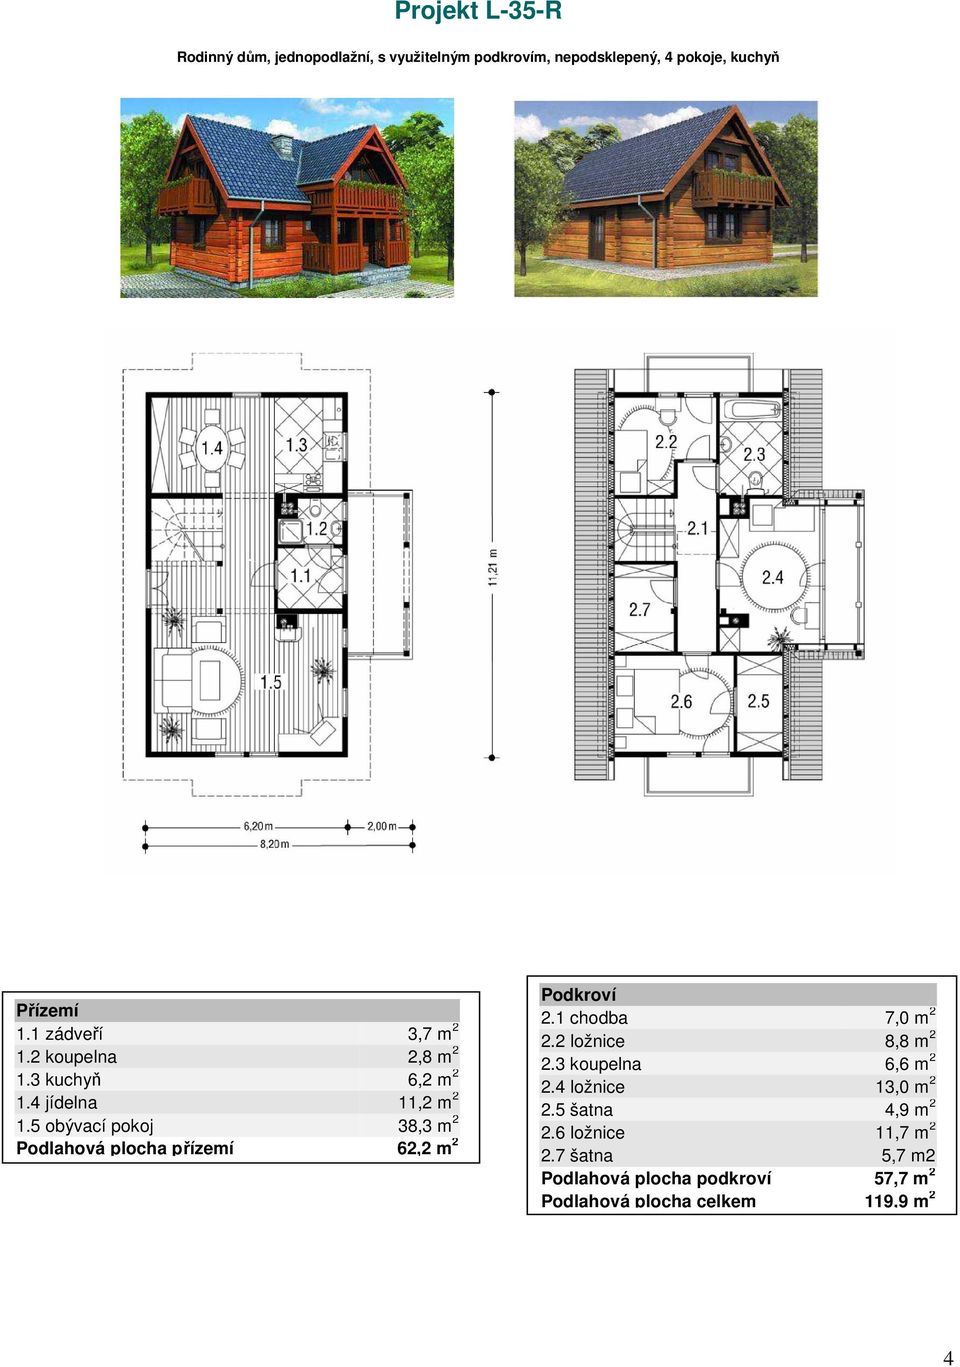 5 obývací pokoj 38,3 m 2 Podlahová plocha přízemí 62,2 m 2 2.1 chodba 7,0 m 2 2.2 ložnice 8,8 m 2 2.